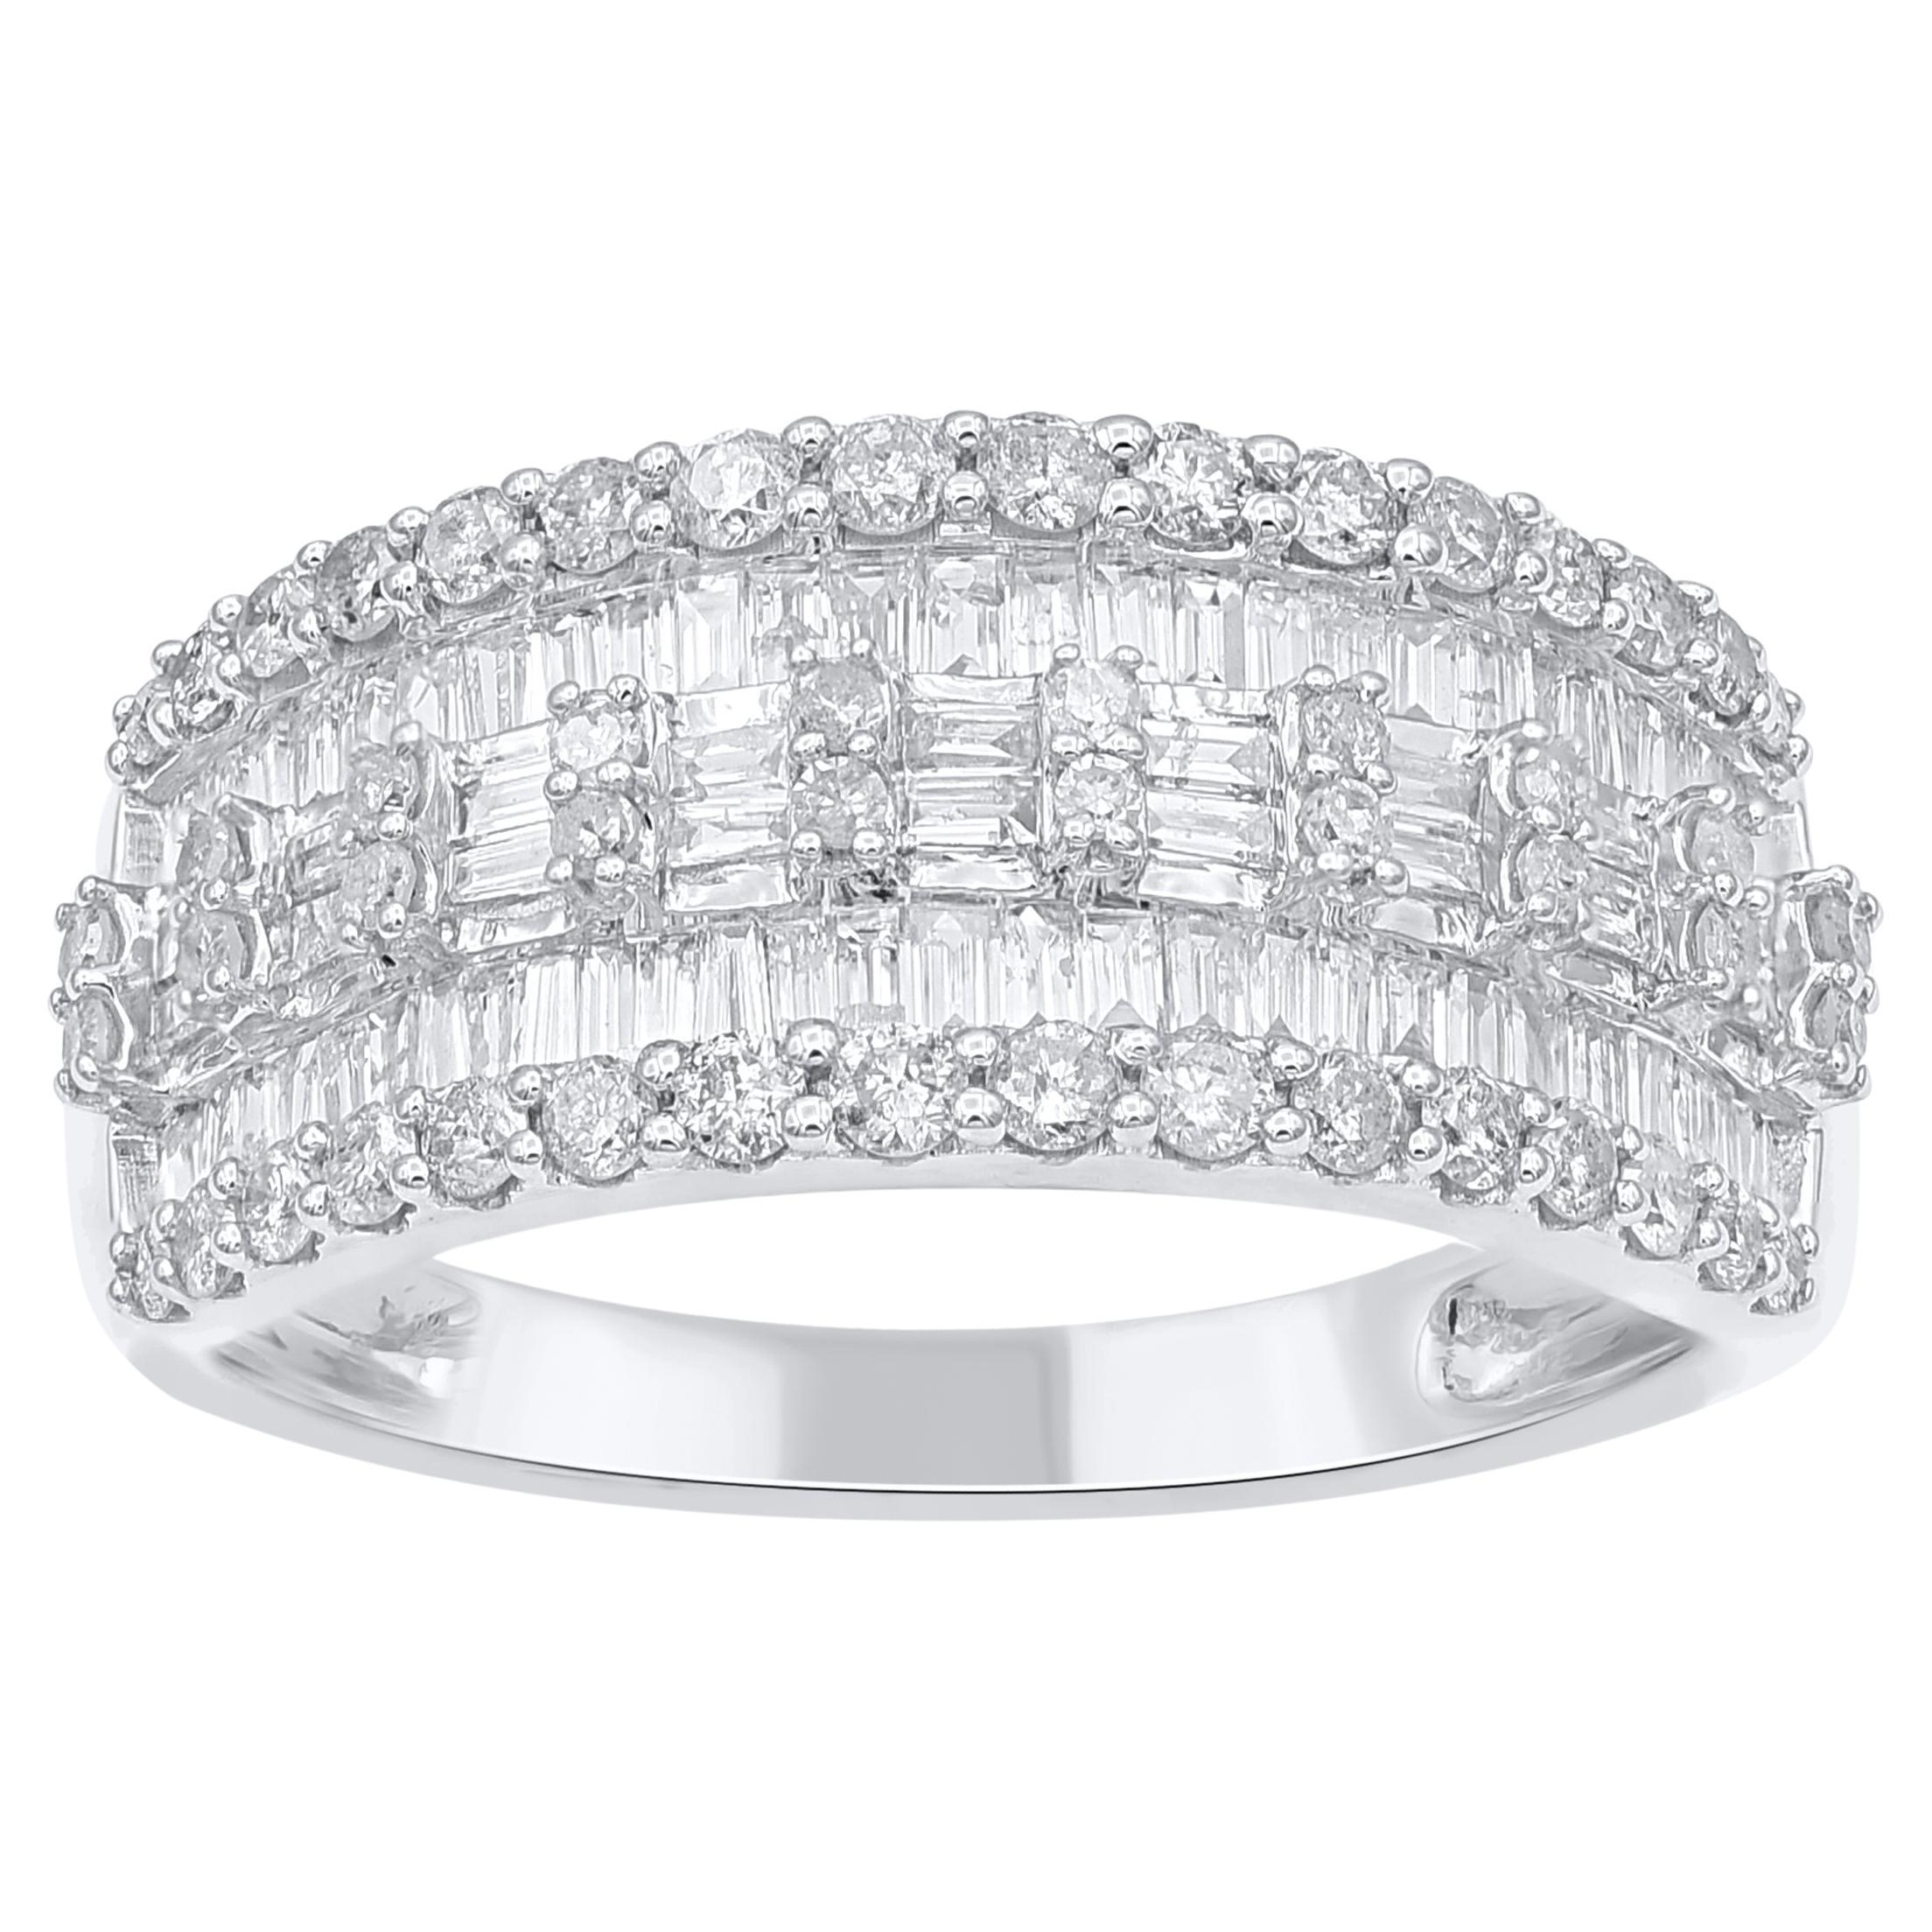 TJD 1.0 Carat Natural Round & Baguette Diamond Wedding Band Ring in 14Karat Gold